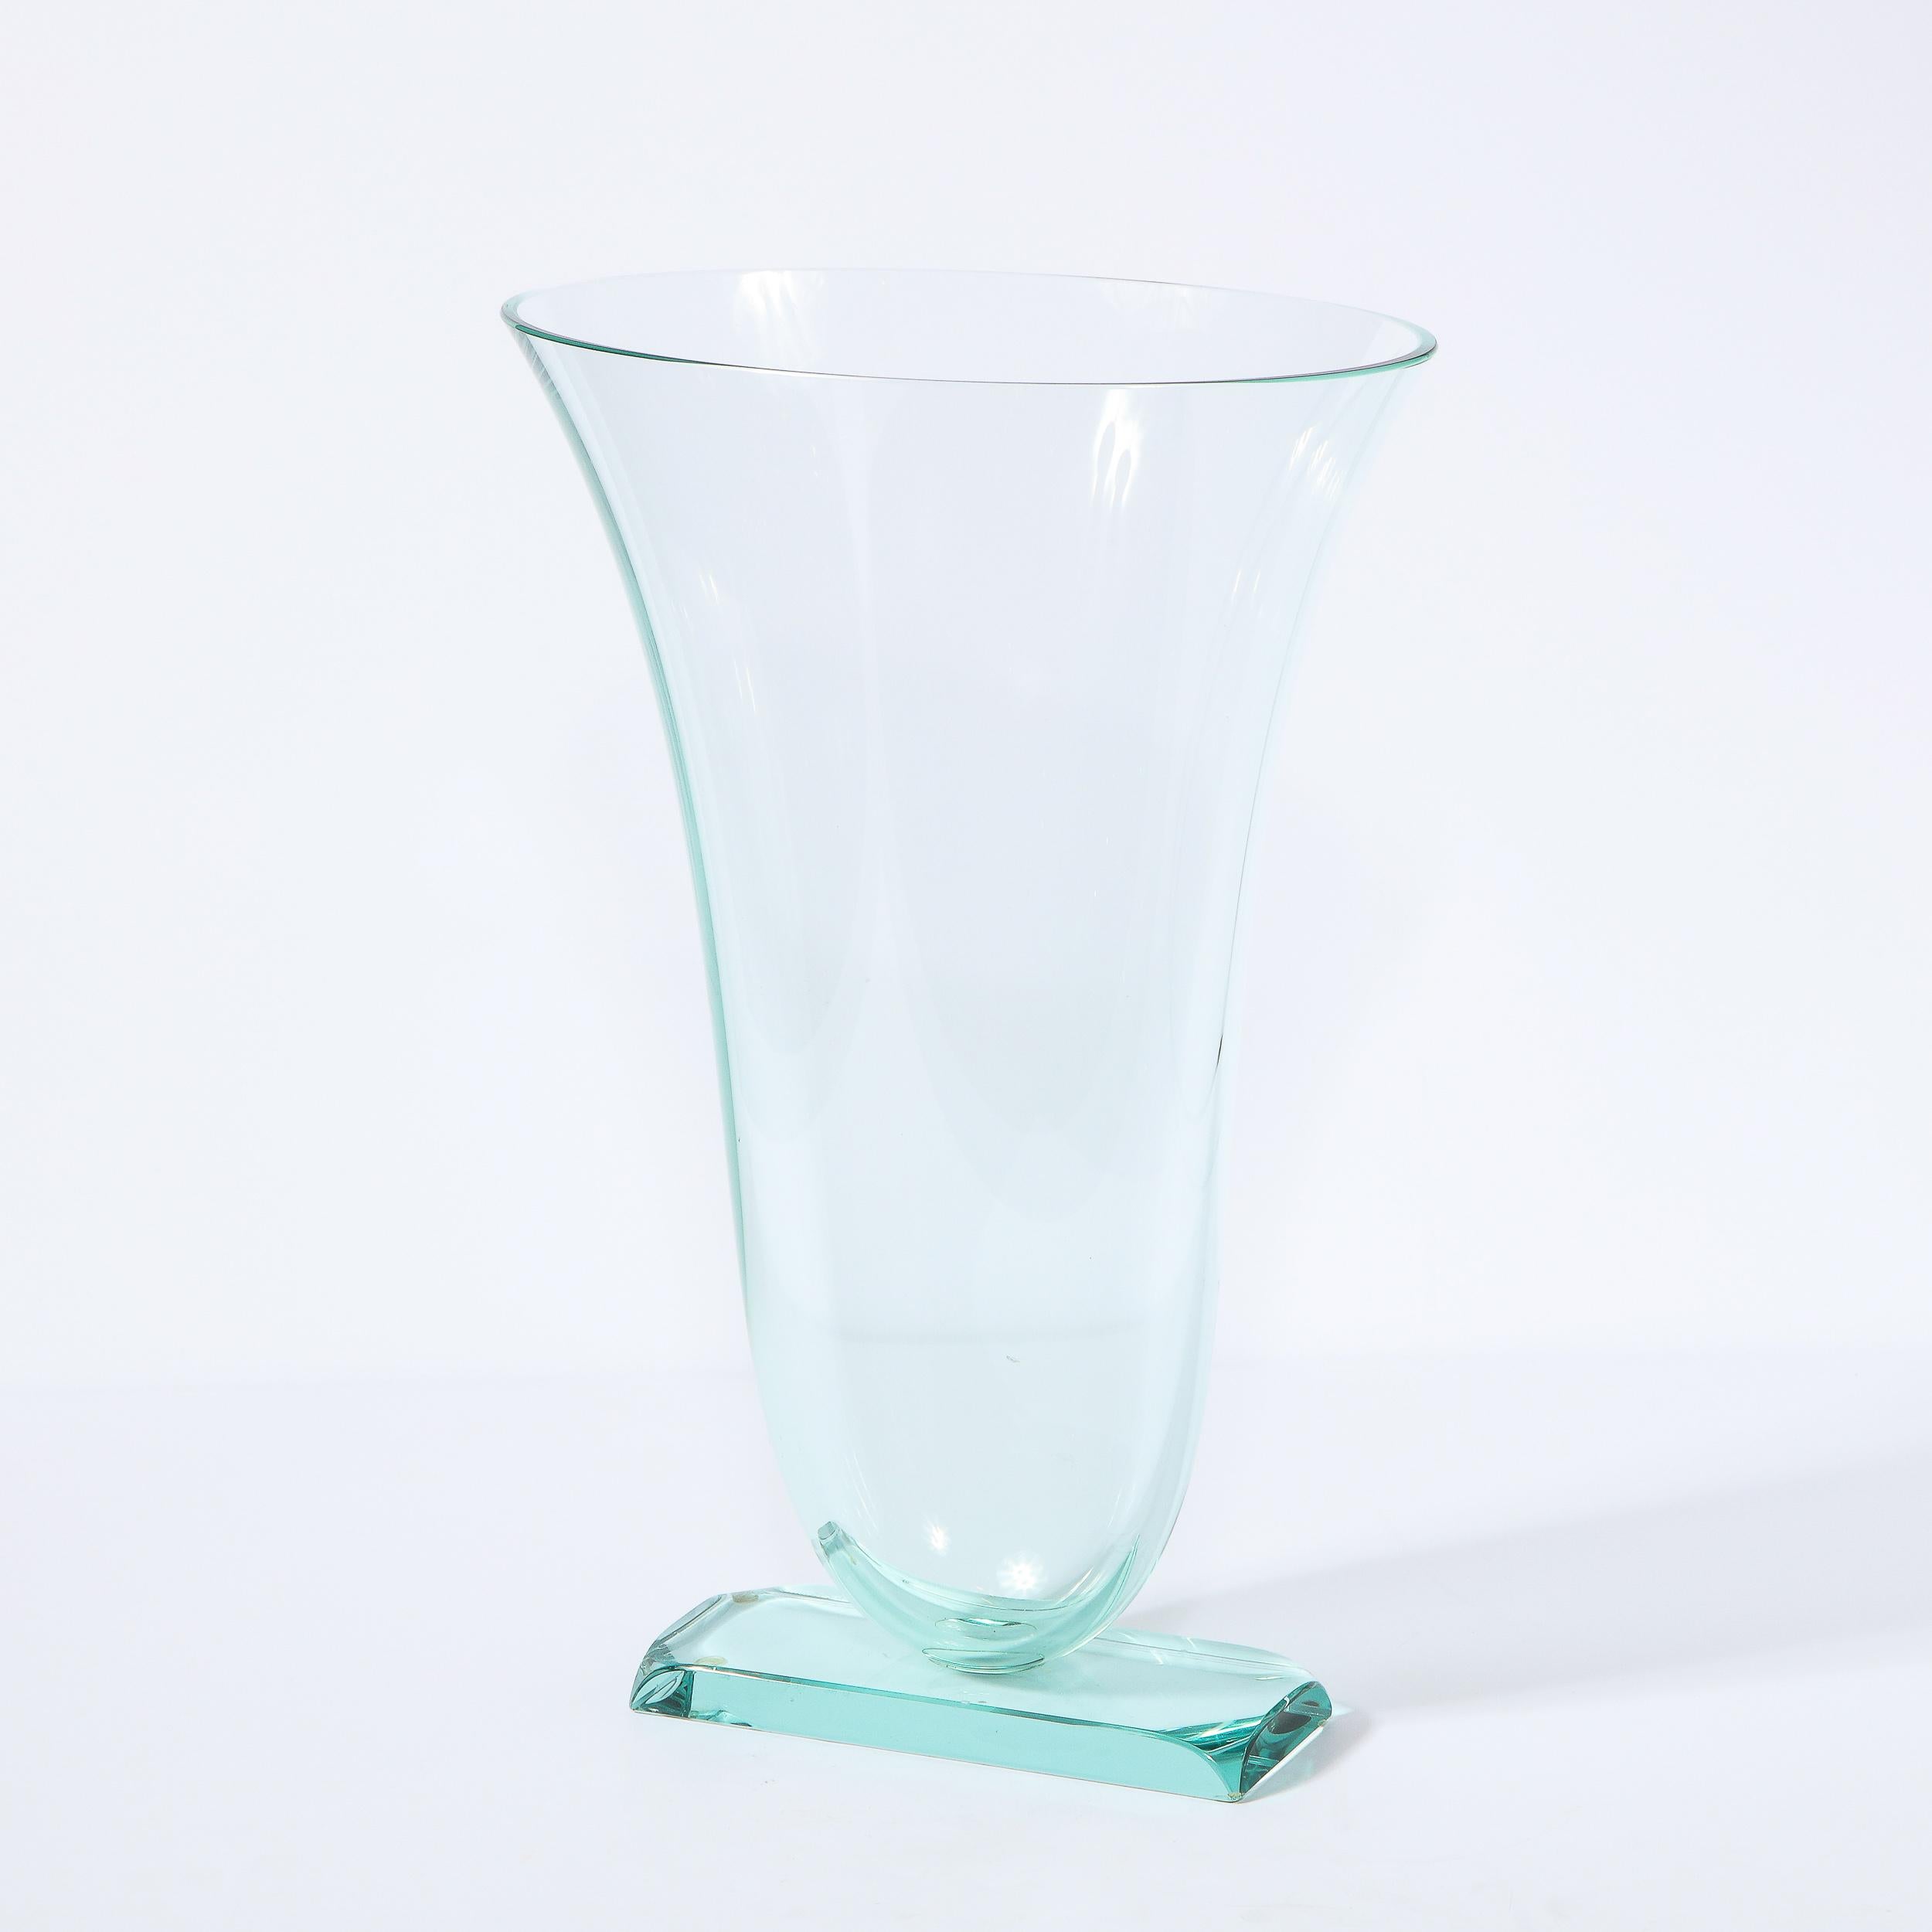 Modernist Sculptural Translucent Acqua Vase Signed by Schlanser Studio 4